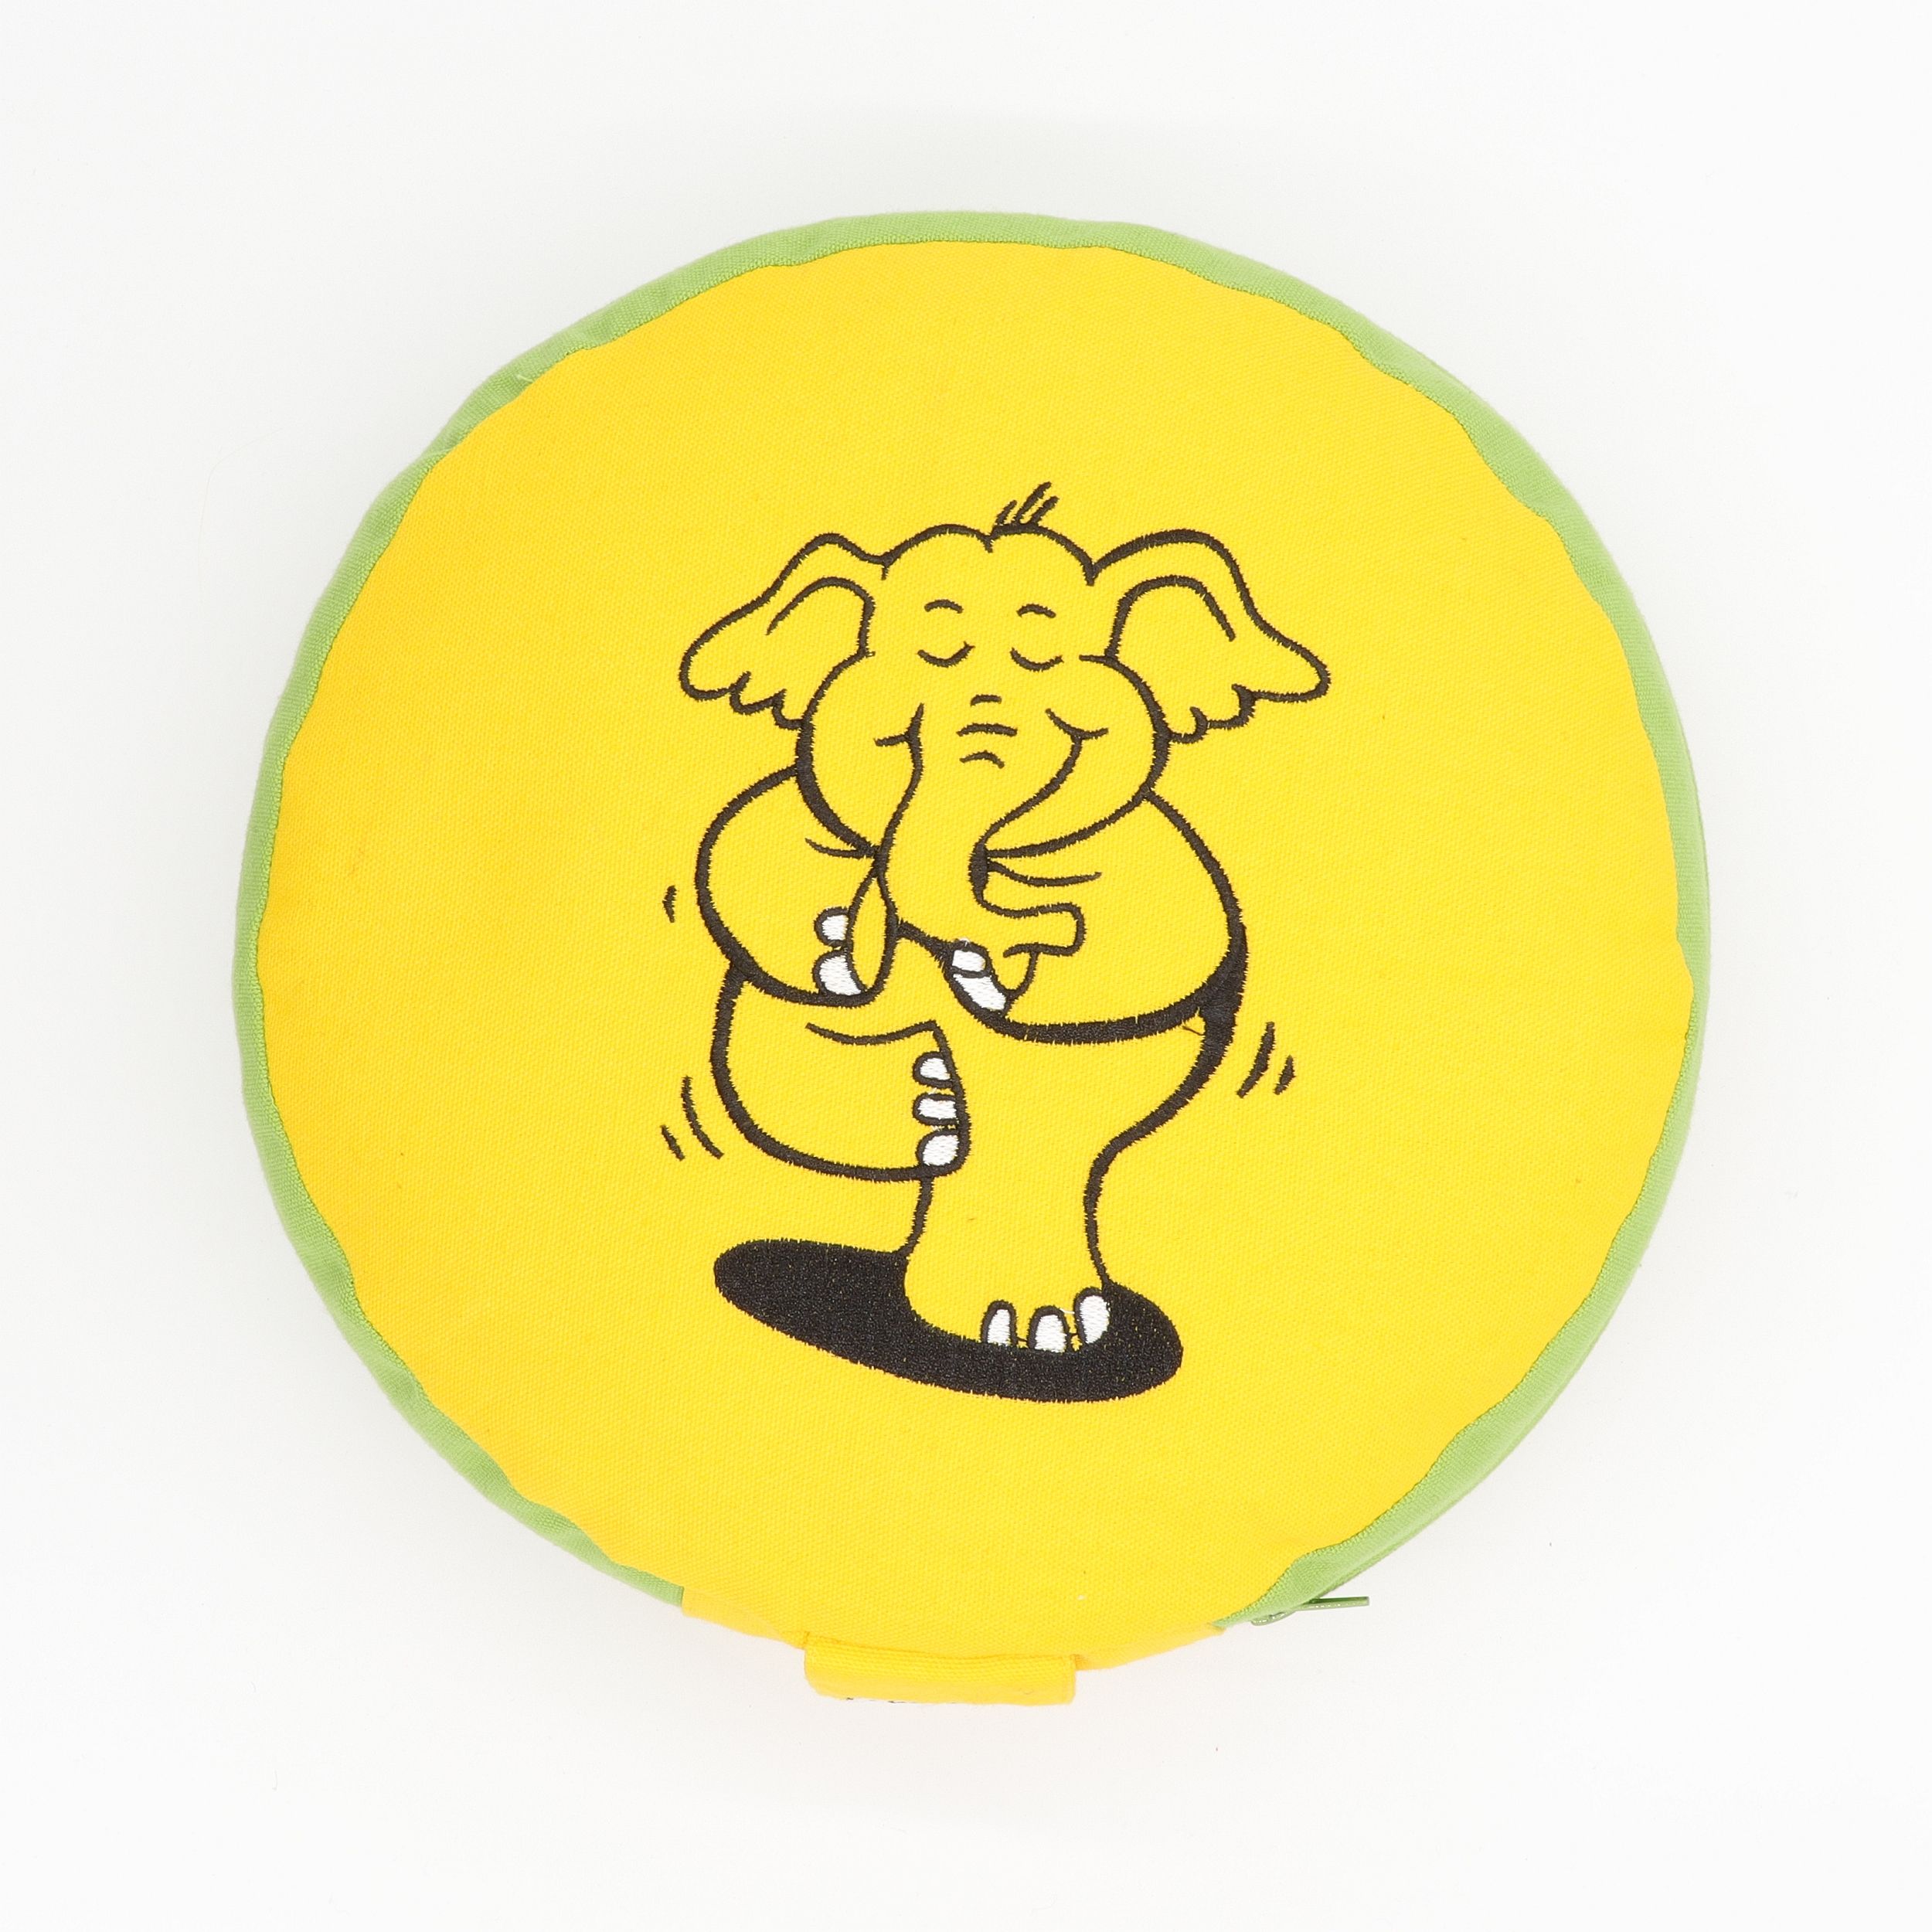 Meditationskissen rund - Yoga Elefant - abnehmbarer Bezug aus 100% Baumwolle - Füllung 100% Buchweizenschalen - Dein neues Sitzkissen für Kinder-Yoga und Meditation - besticktes Sitzkissen mit Trageschlaufe